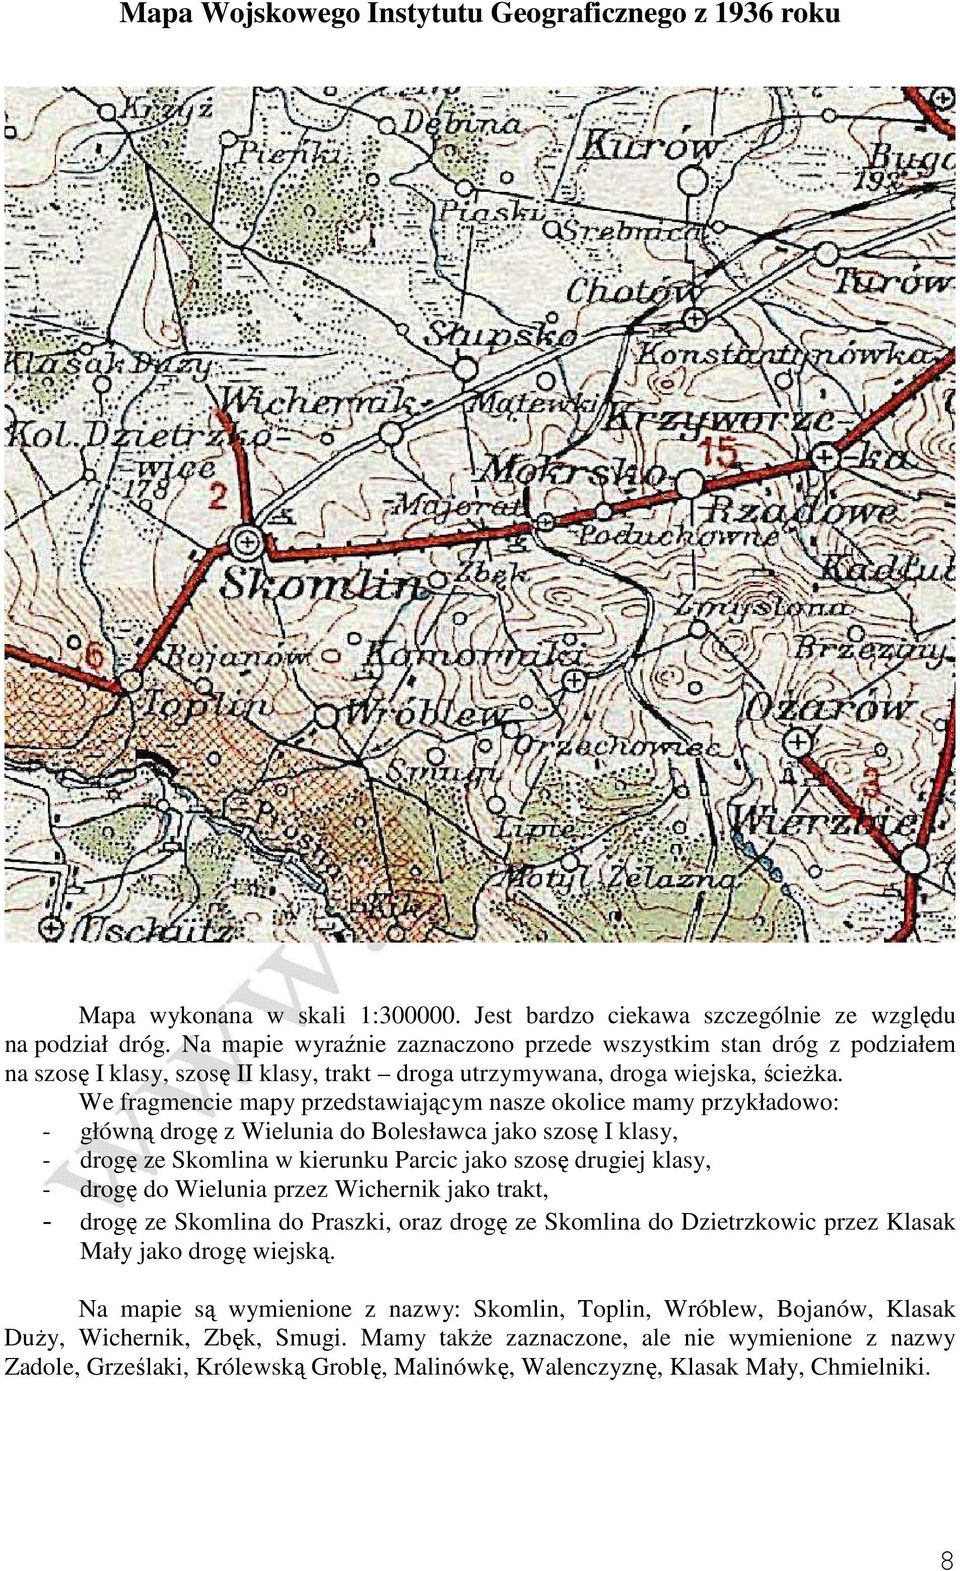 We fragmencie mapy przedstawiającym nasze okolice mamy przykładowo: - główną drogę z Wielunia do Bolesławca jako szosę I klasy, - drogę ze Skomlina w kierunku Parcic jako szosę drugiej klasy, - drogę